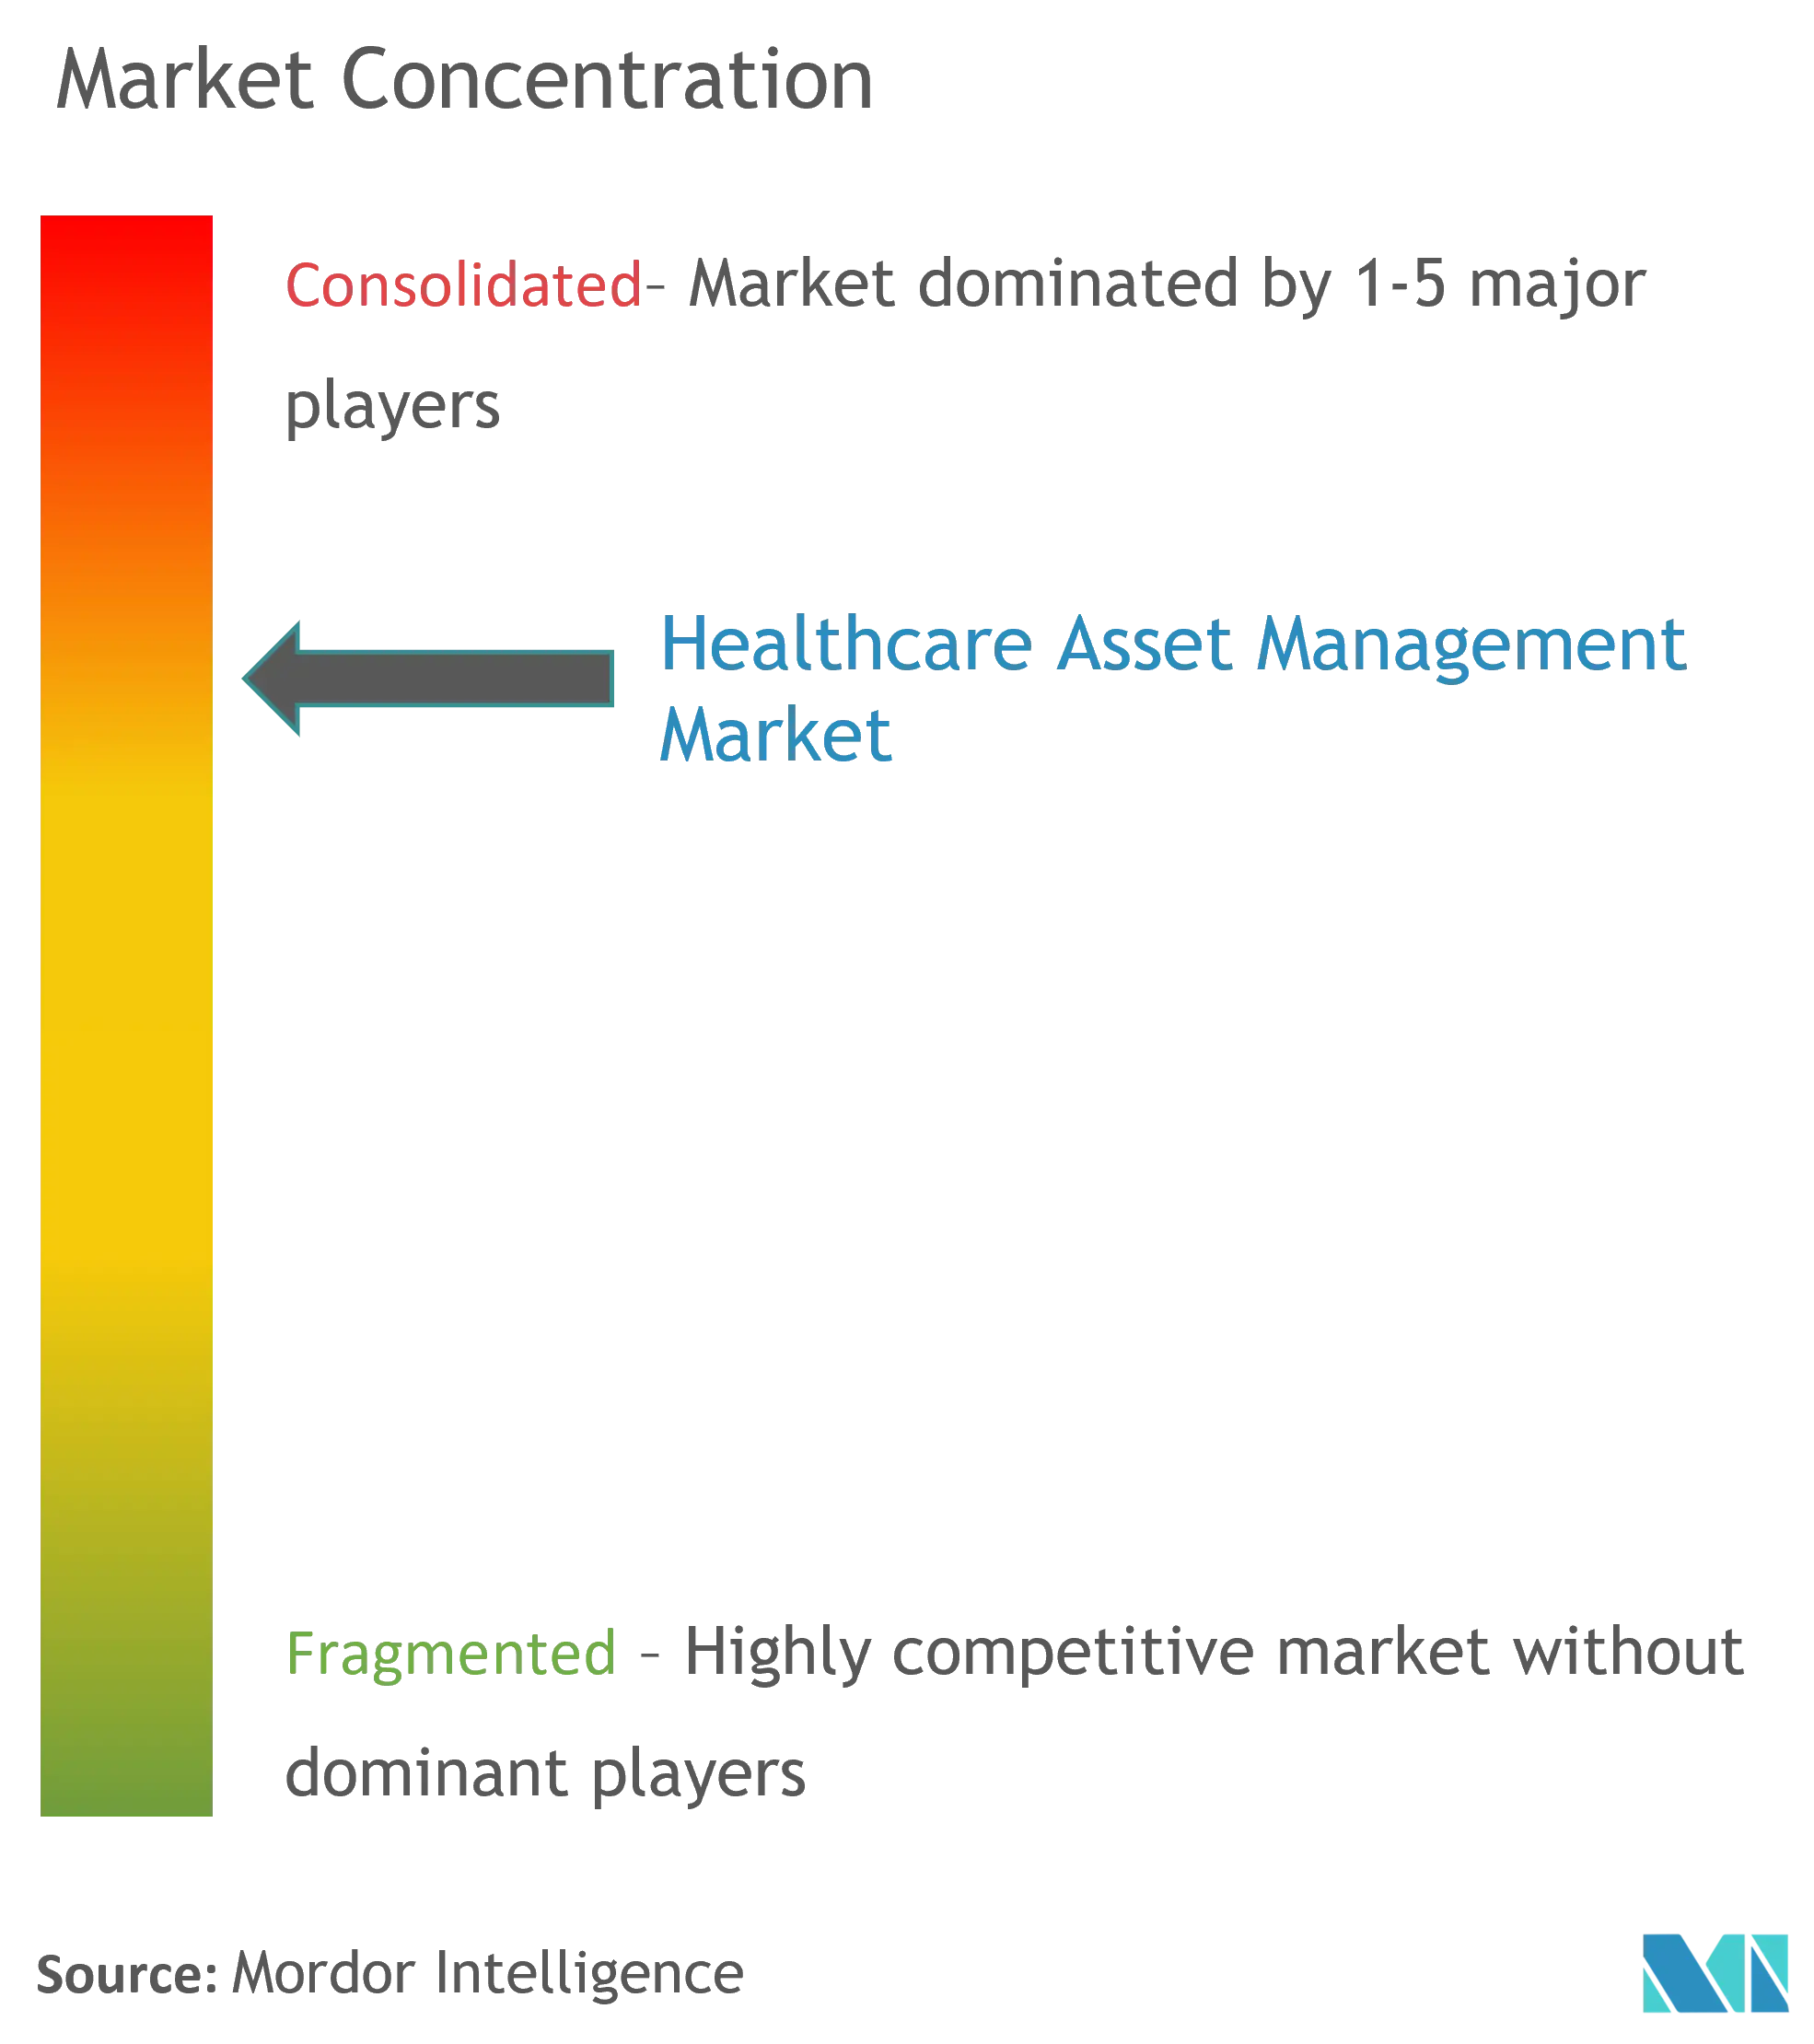 Global Healthcare Asset Management Market Concentration